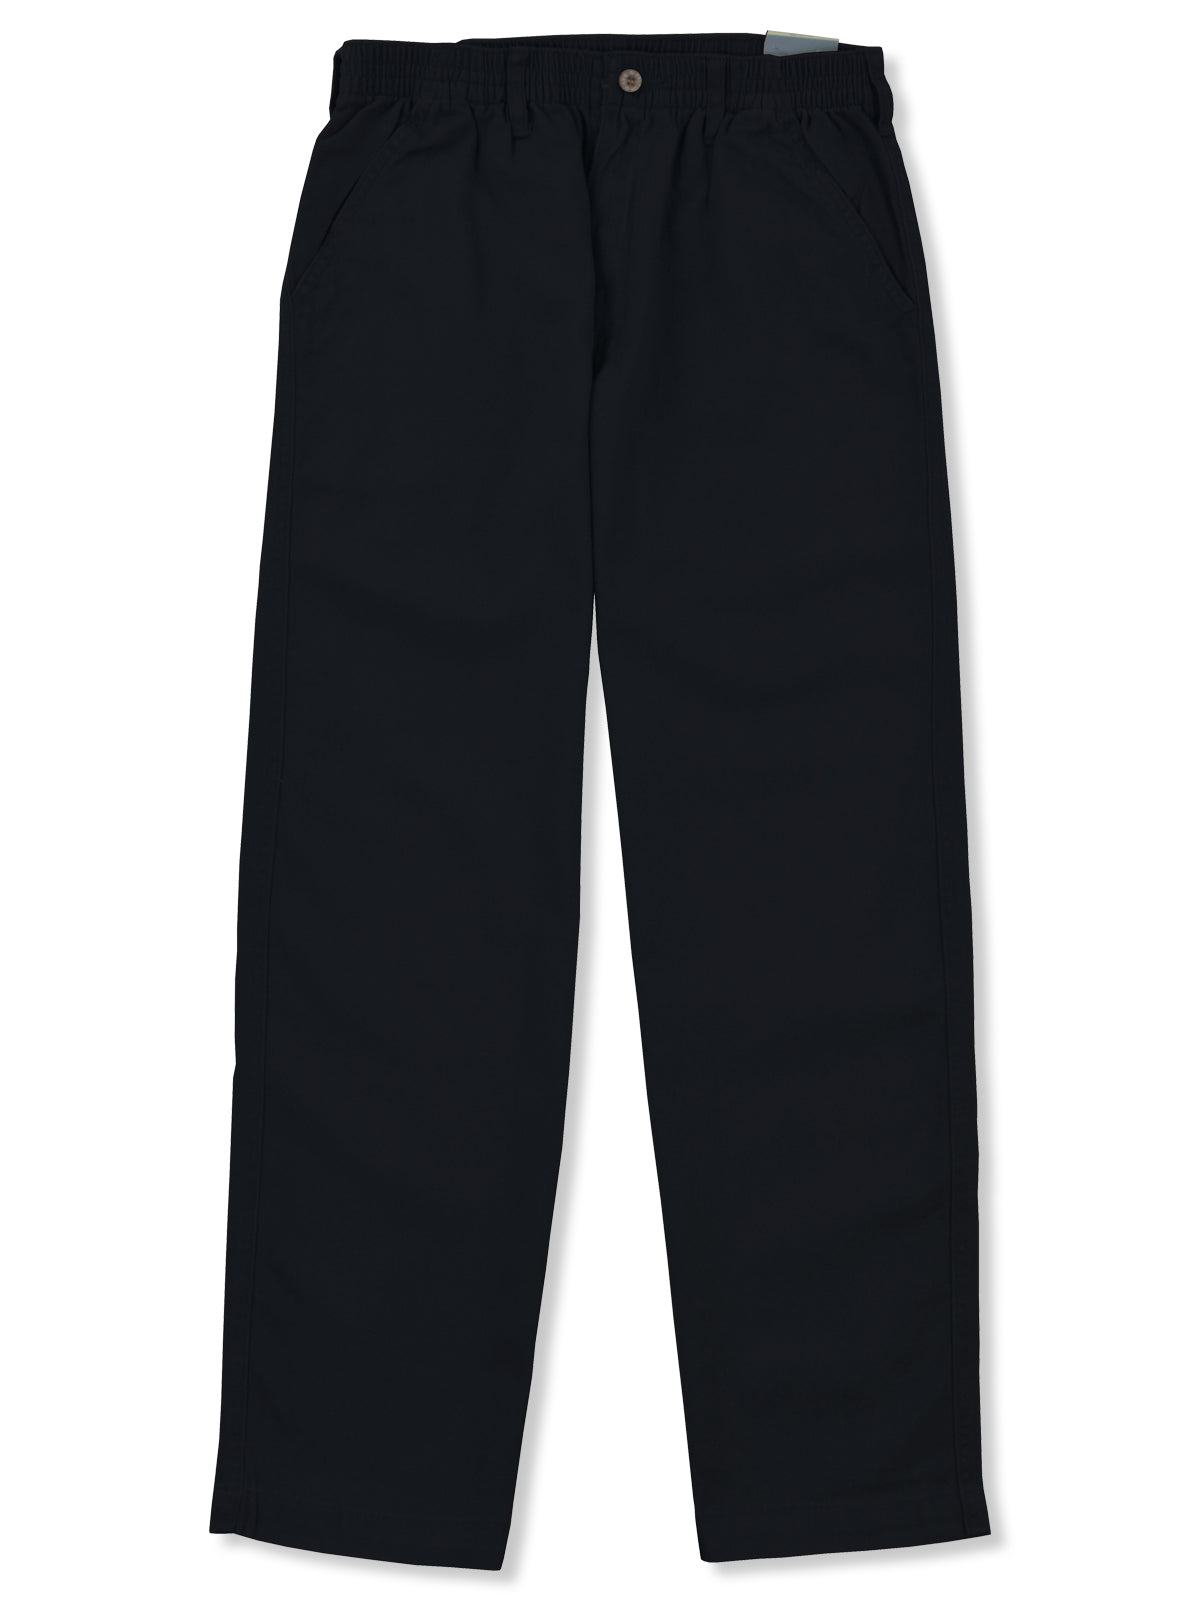 Full Elastic Waist Pants - Regular Sizes